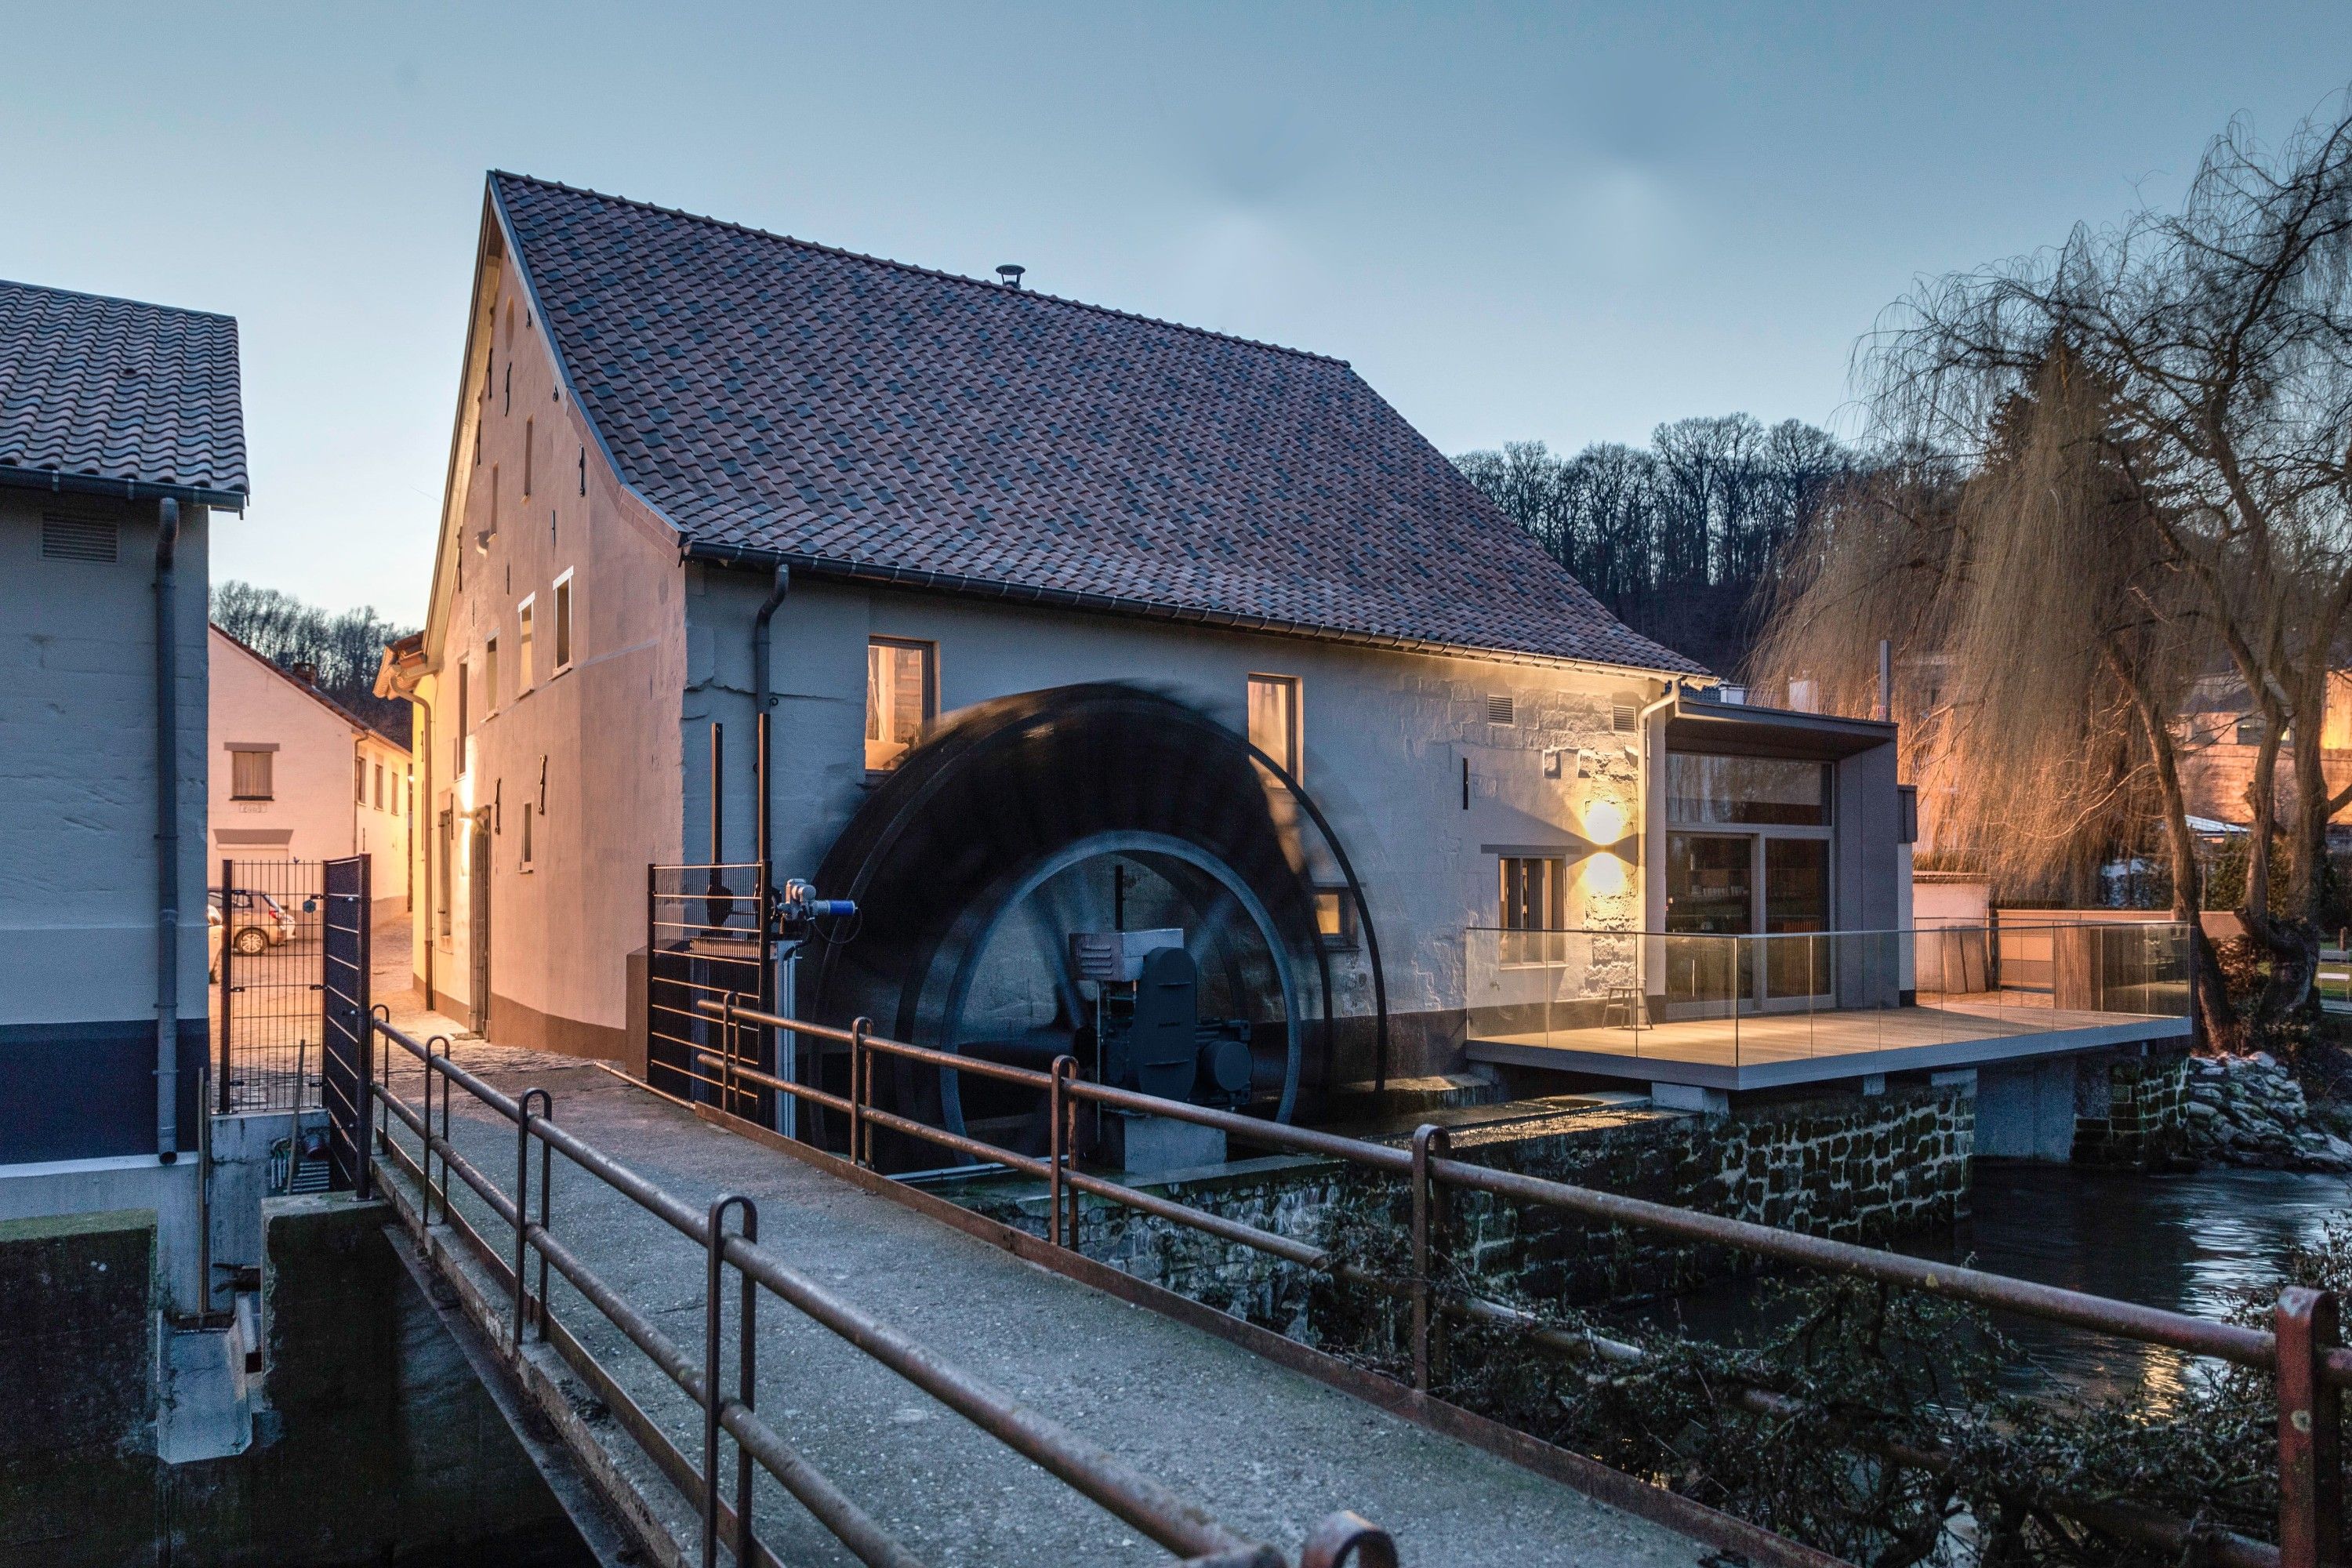 Obrázky Krásně zrekonstruovaný mlýn nedaleko Maastrichtu